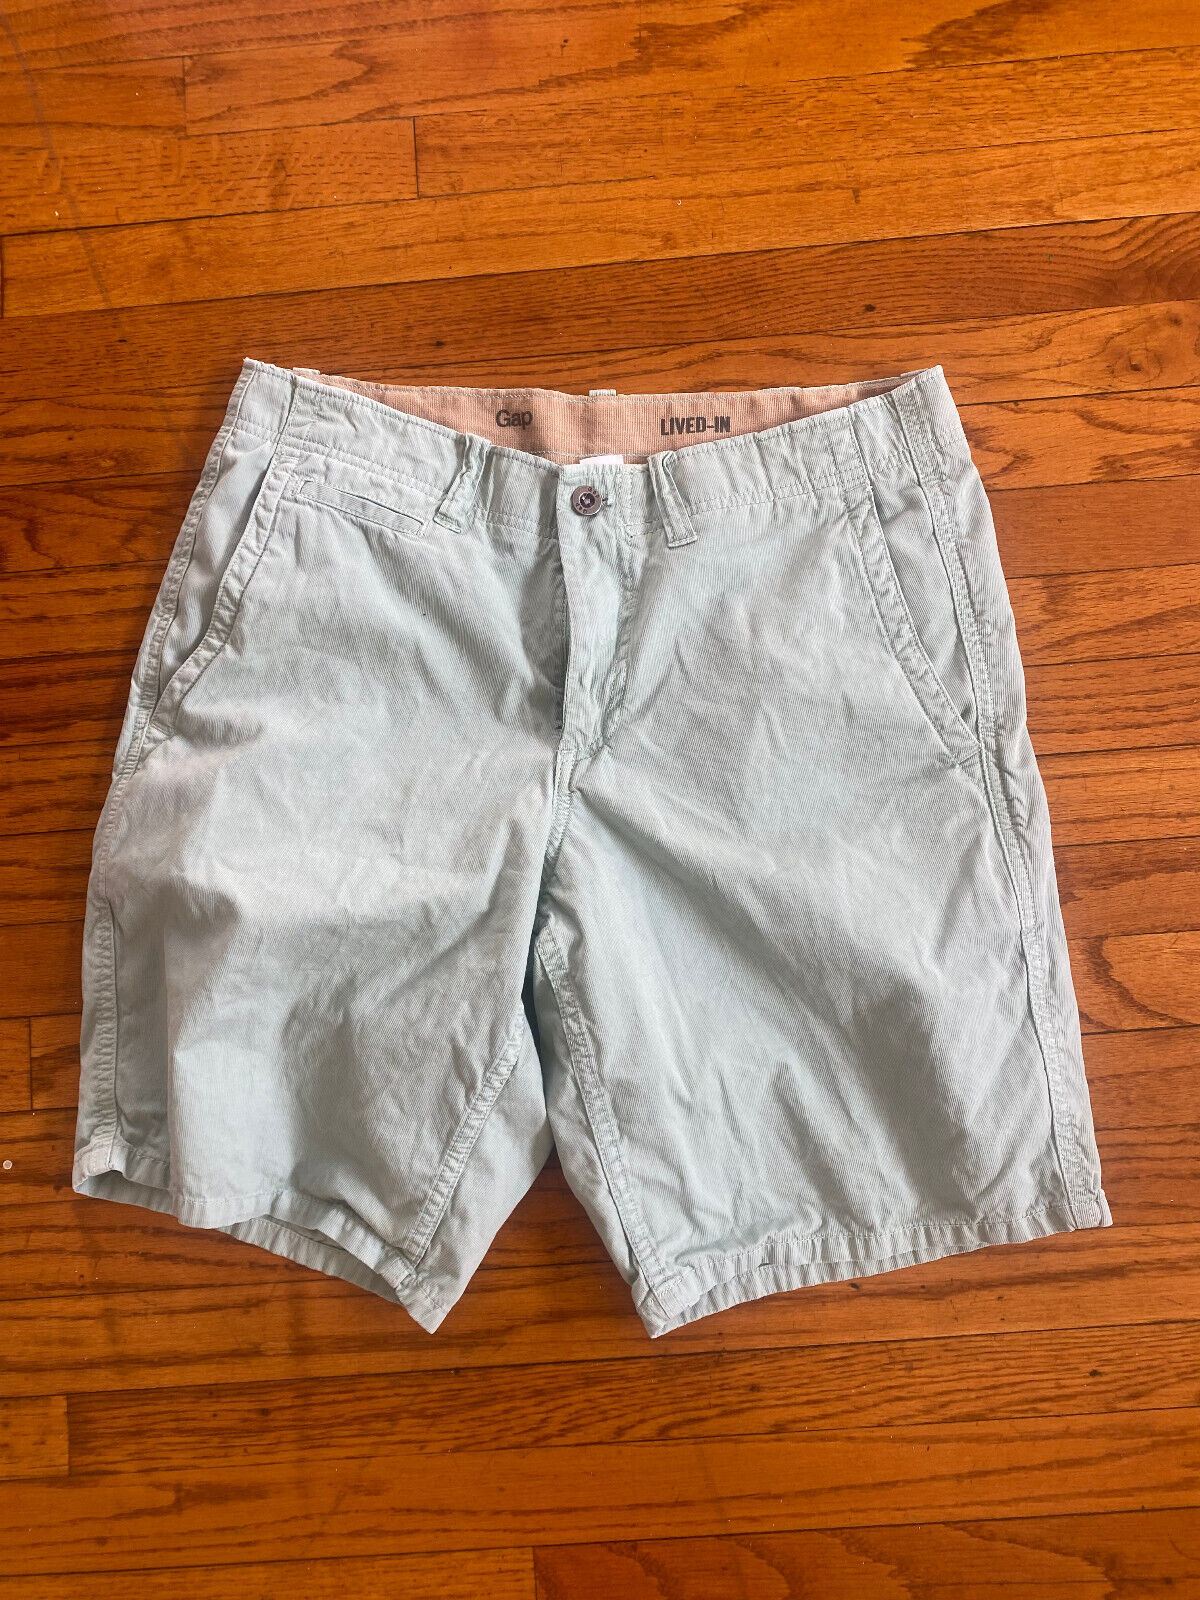 Sea Foam Green Burmuda Shorts - Gap - Size 32 Waist